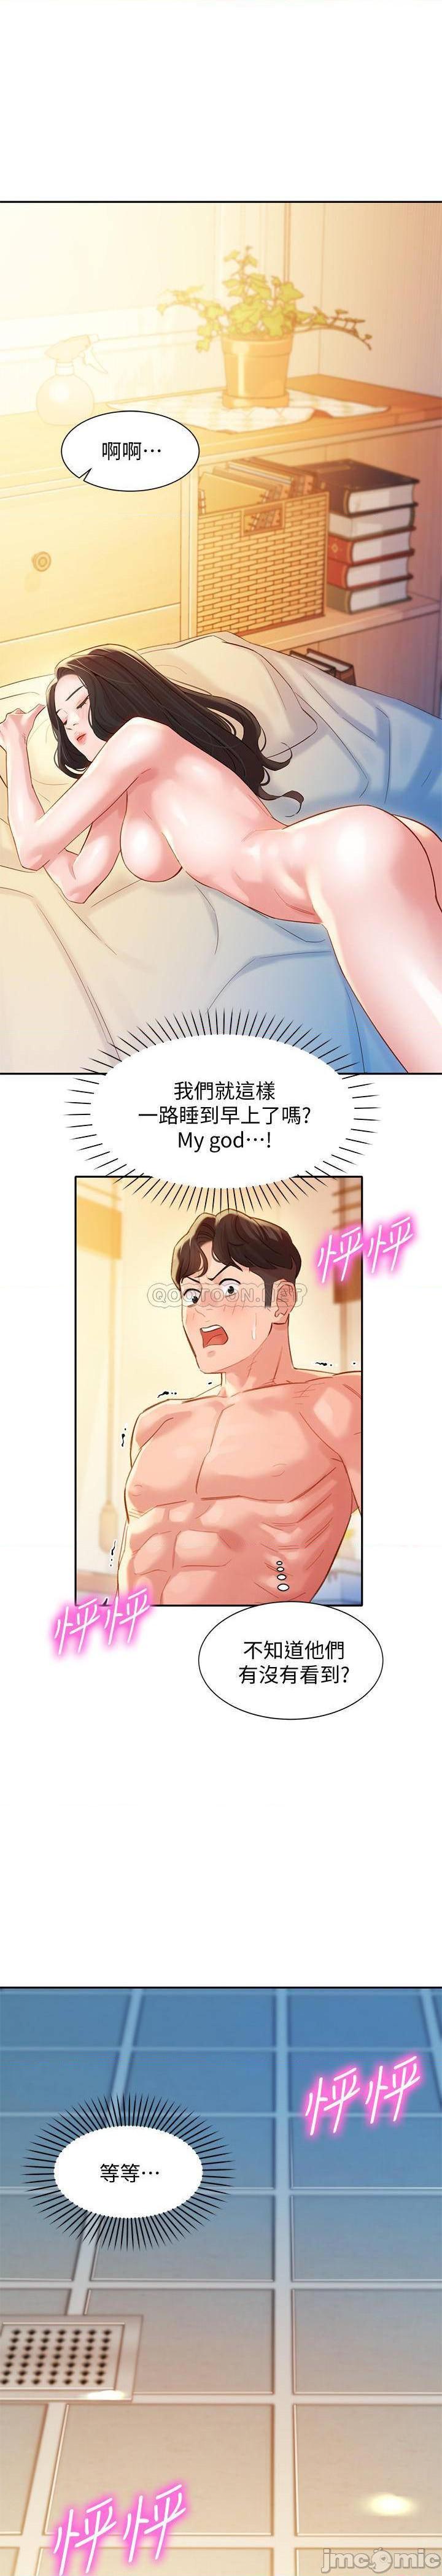 《女神写真》漫画 第26话 - 难道心颖跟汉杰在浴室里…?